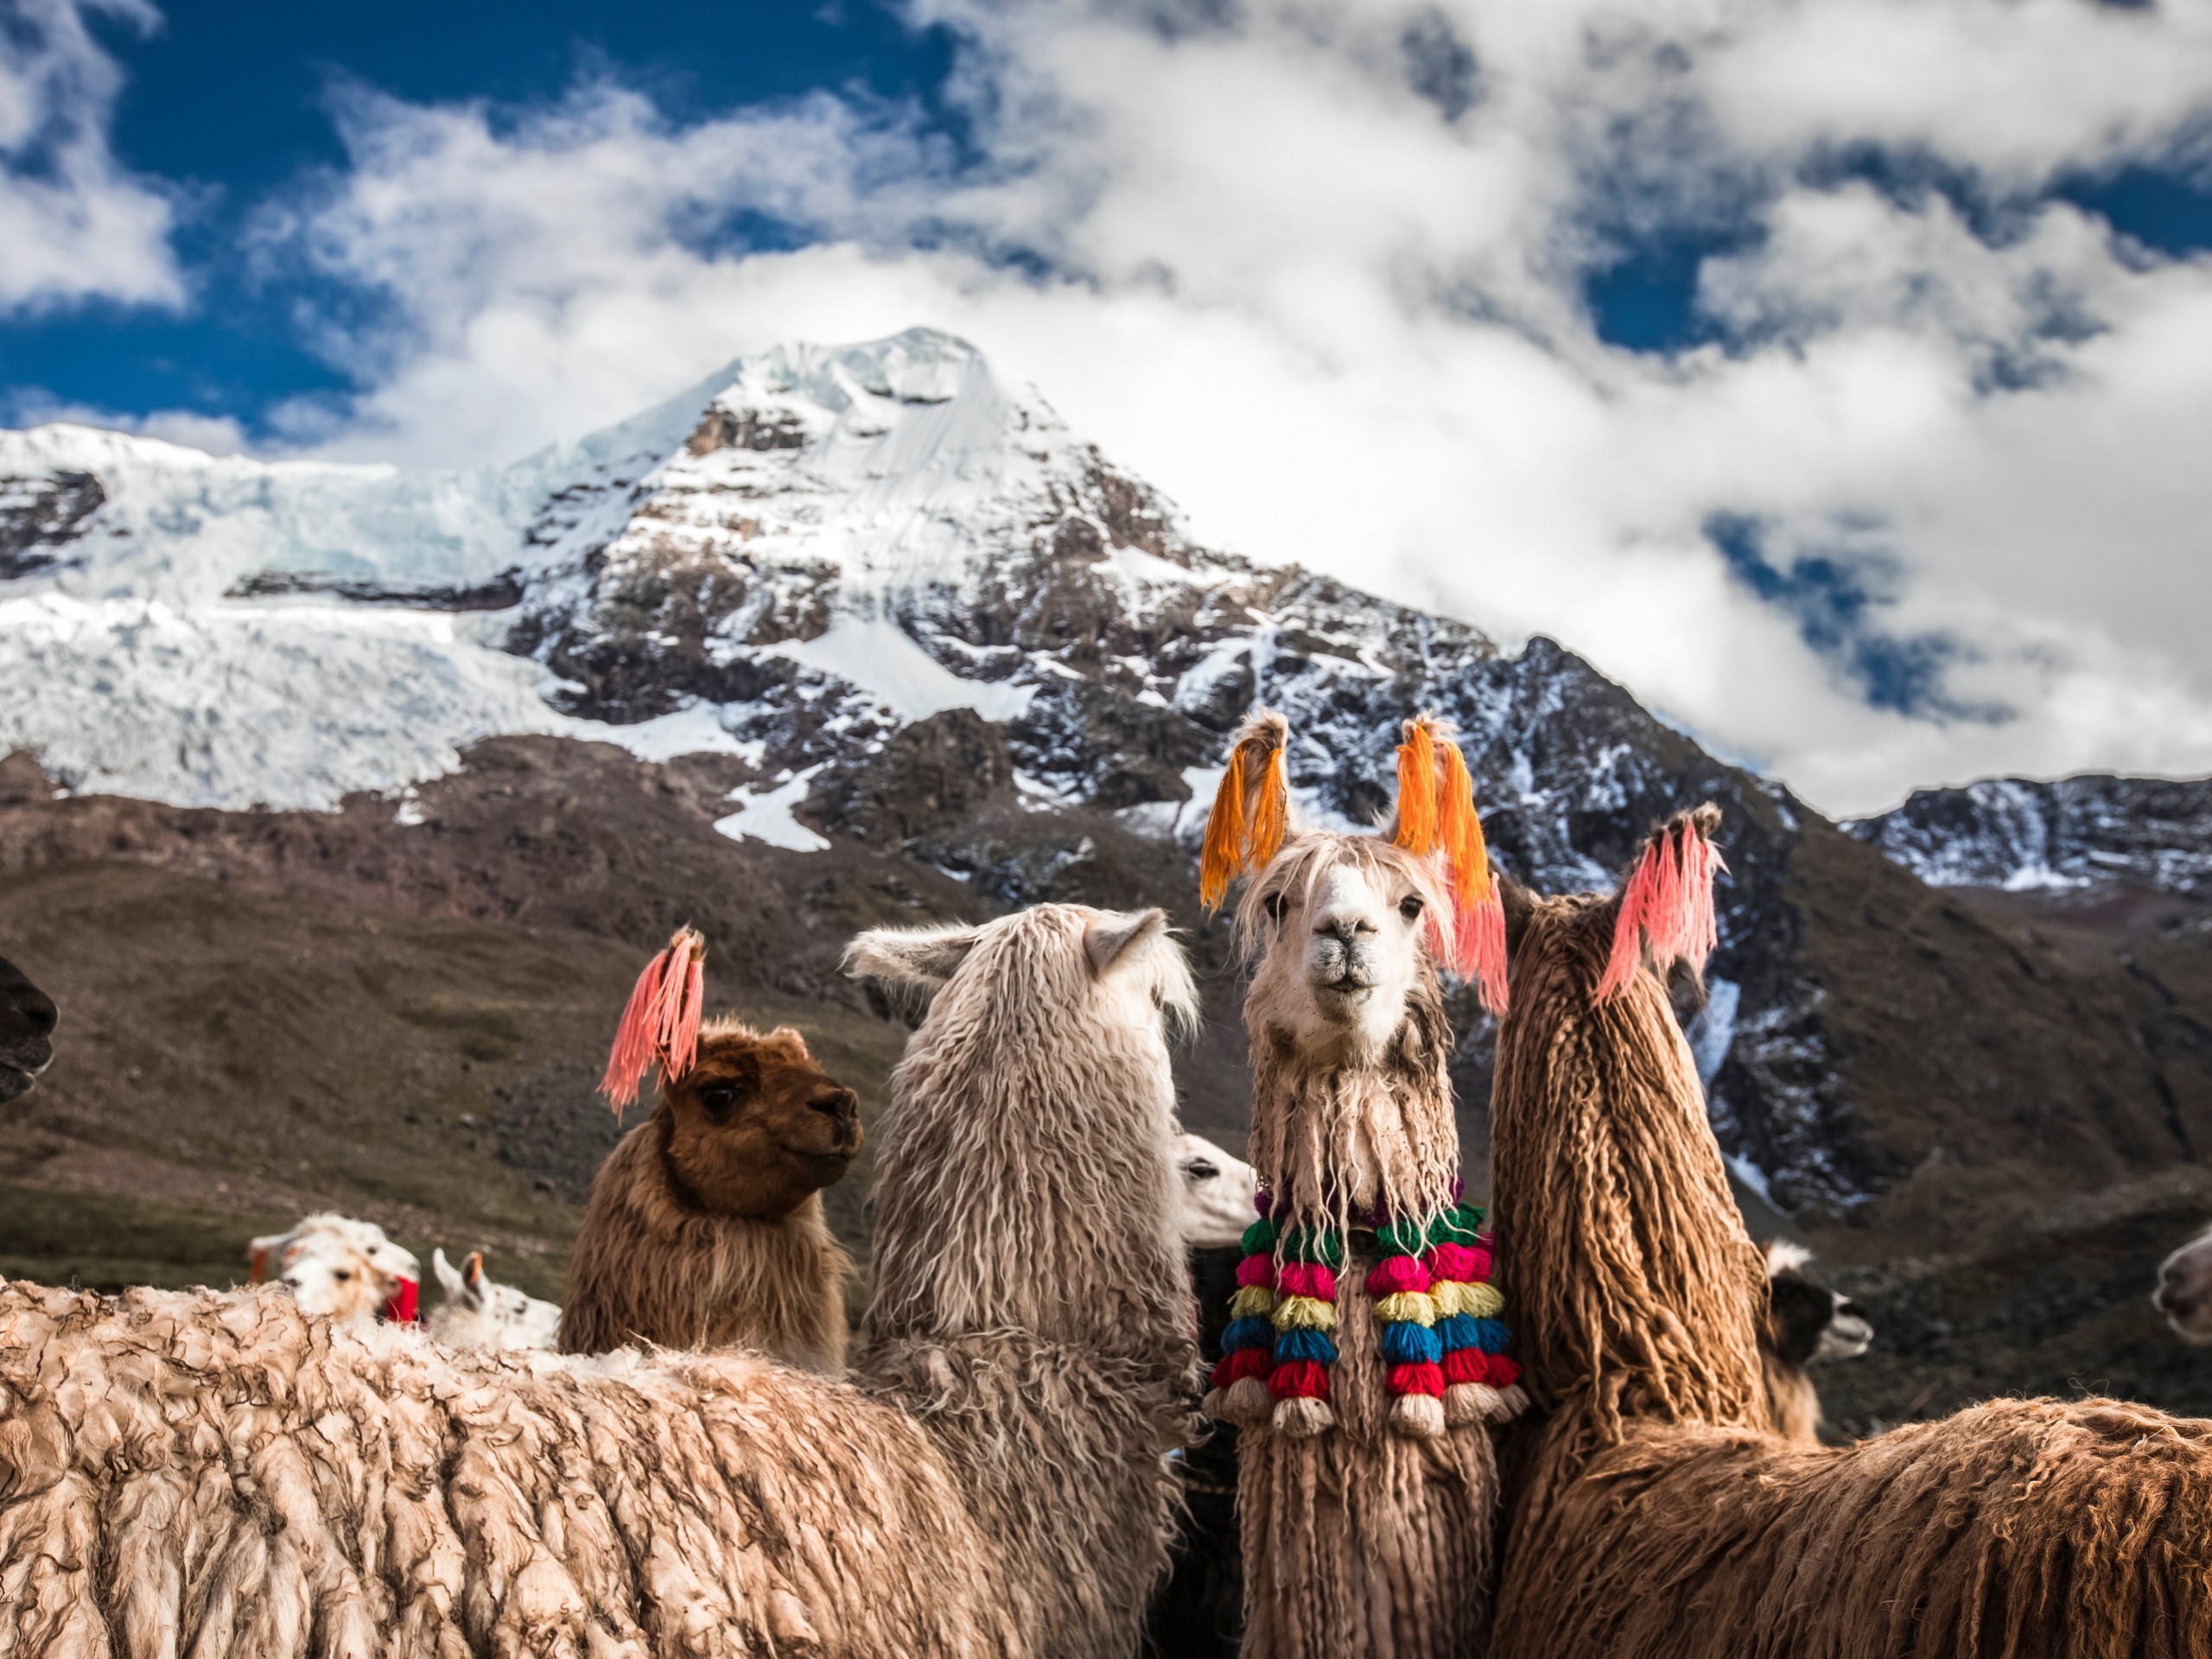 Funny llamas posing at Machuraccay